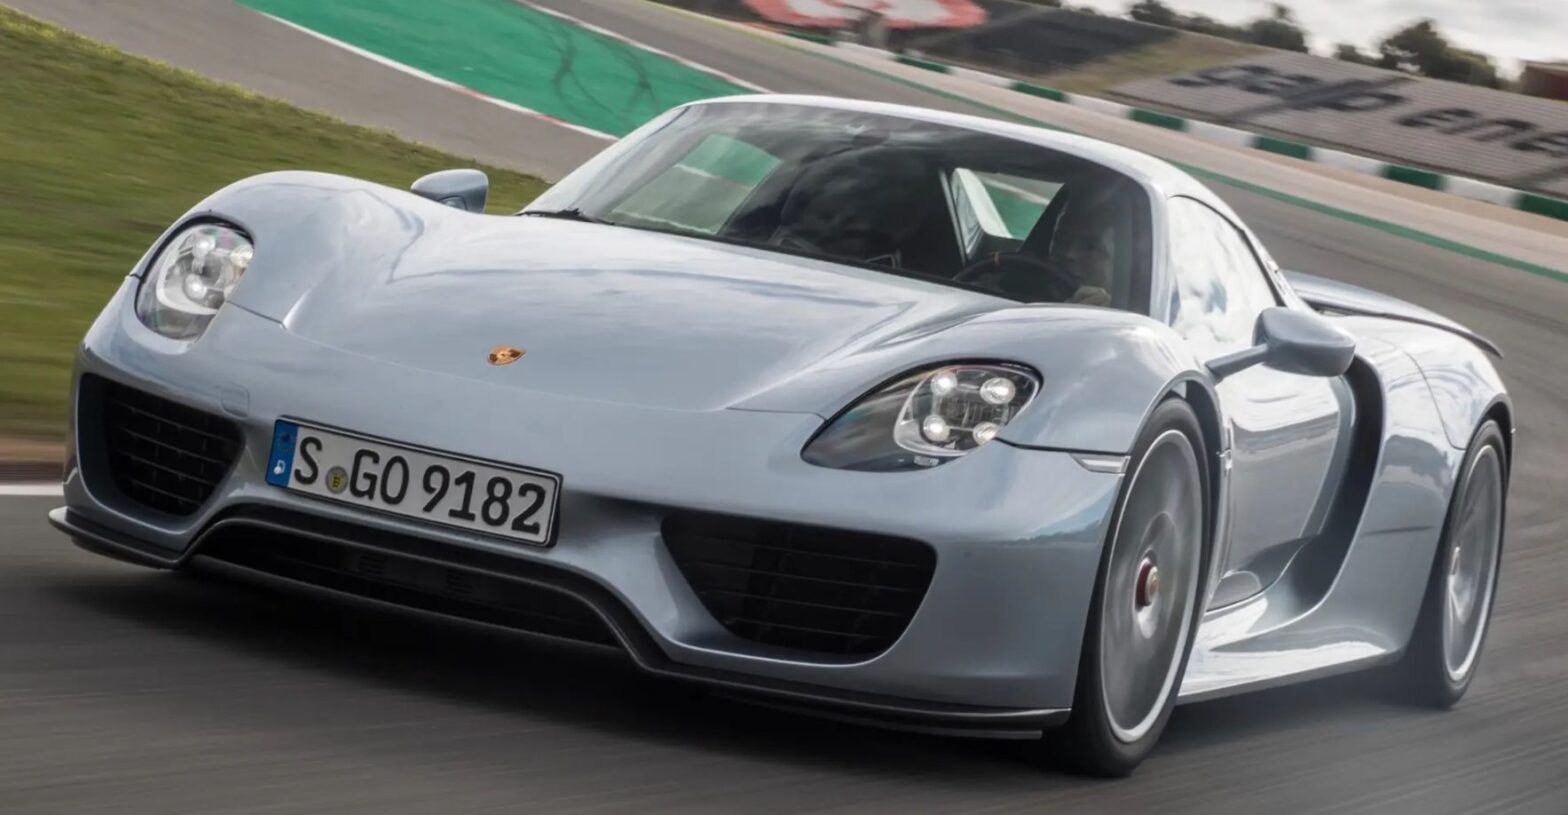 Další hypercar od Porsche se blíží, ale nebude tu dříve než v roce 2025